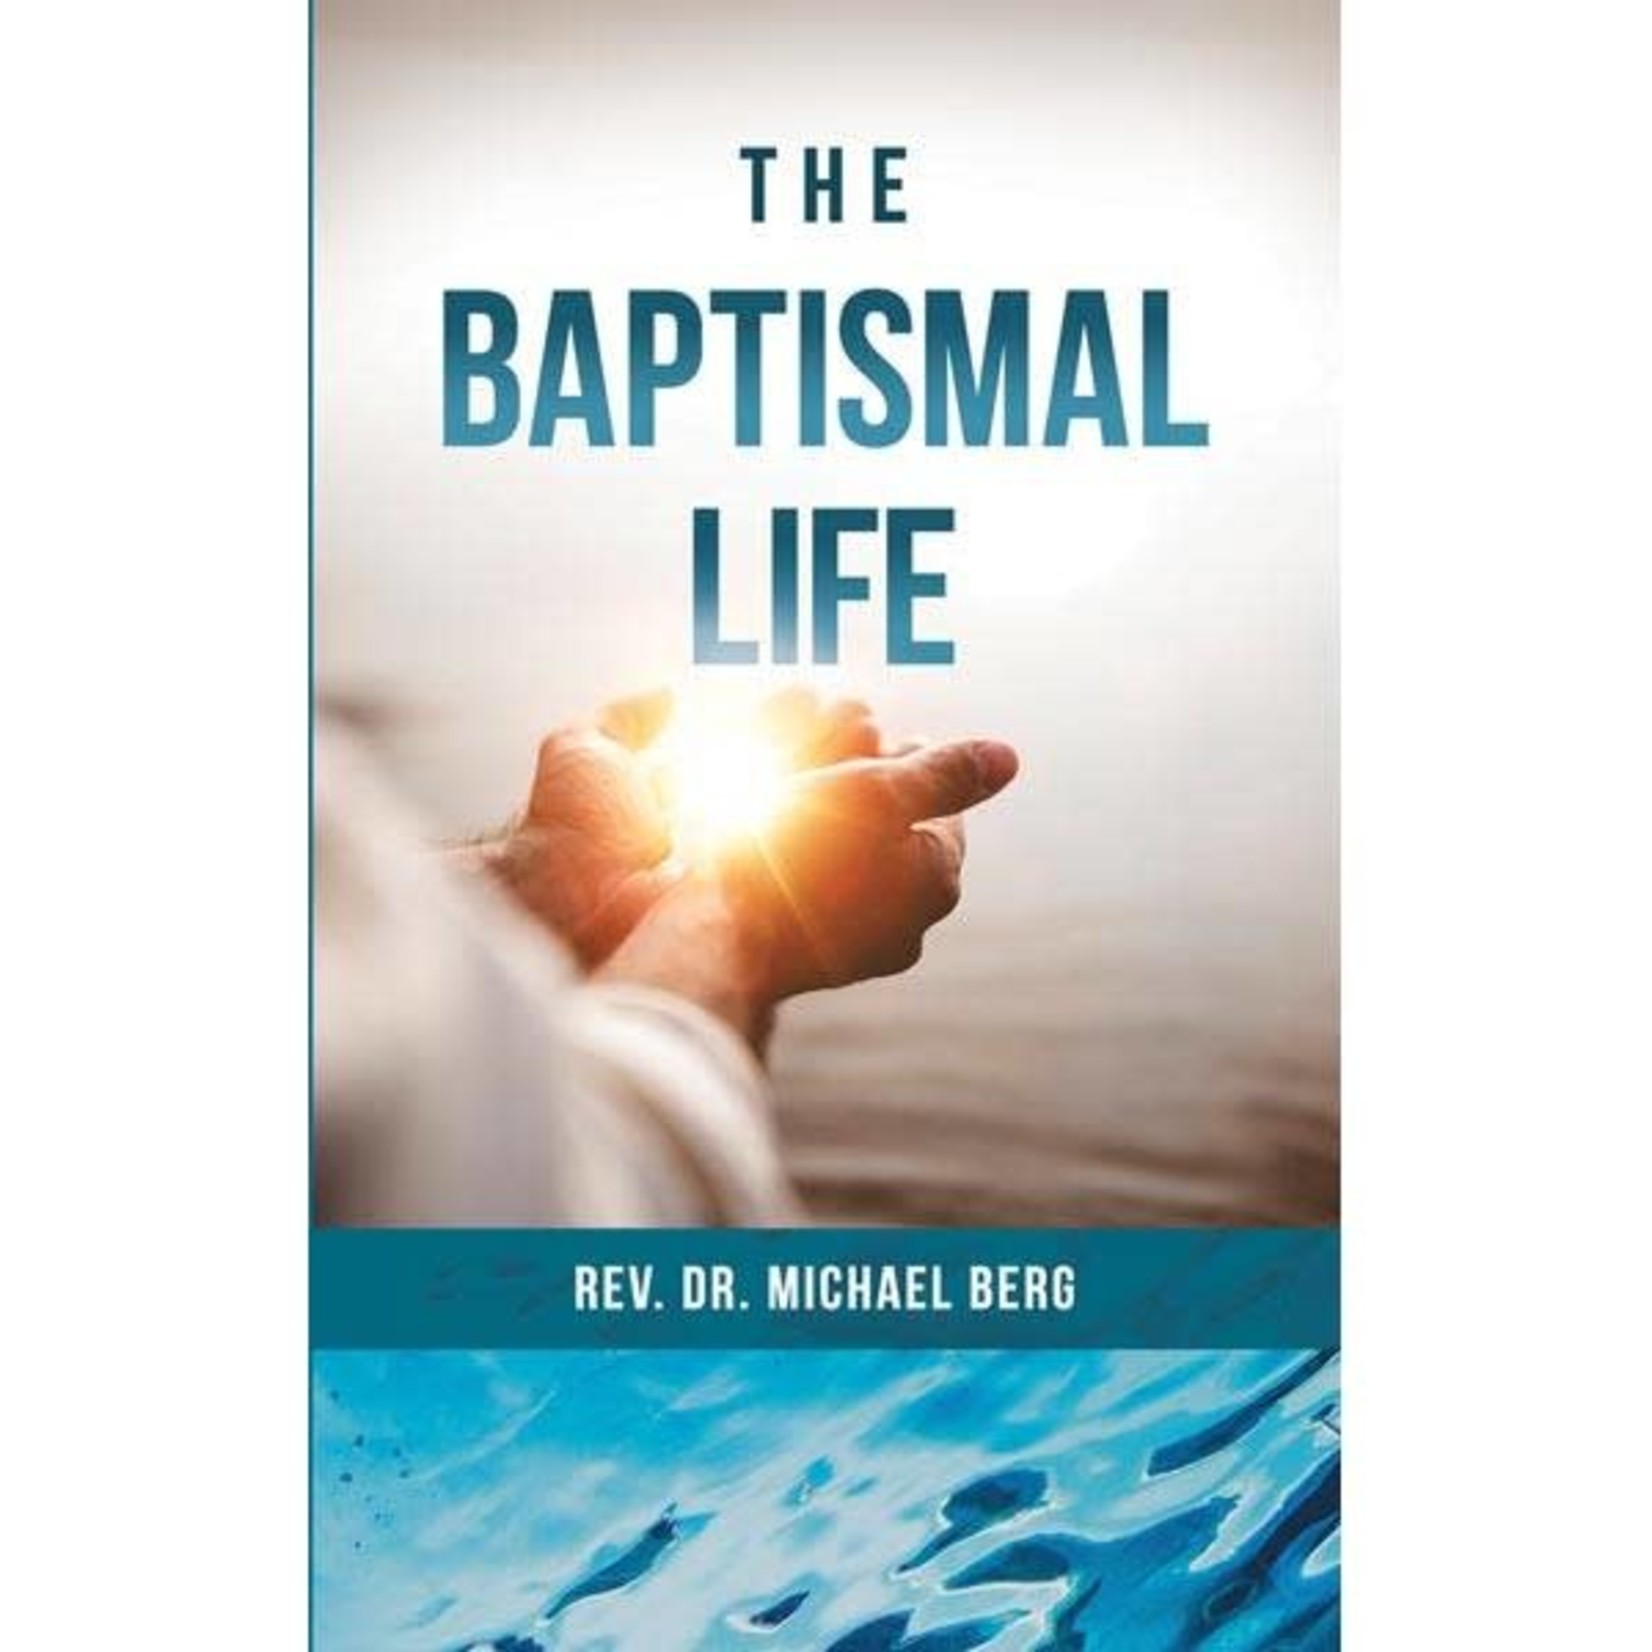 The Baptismal Life